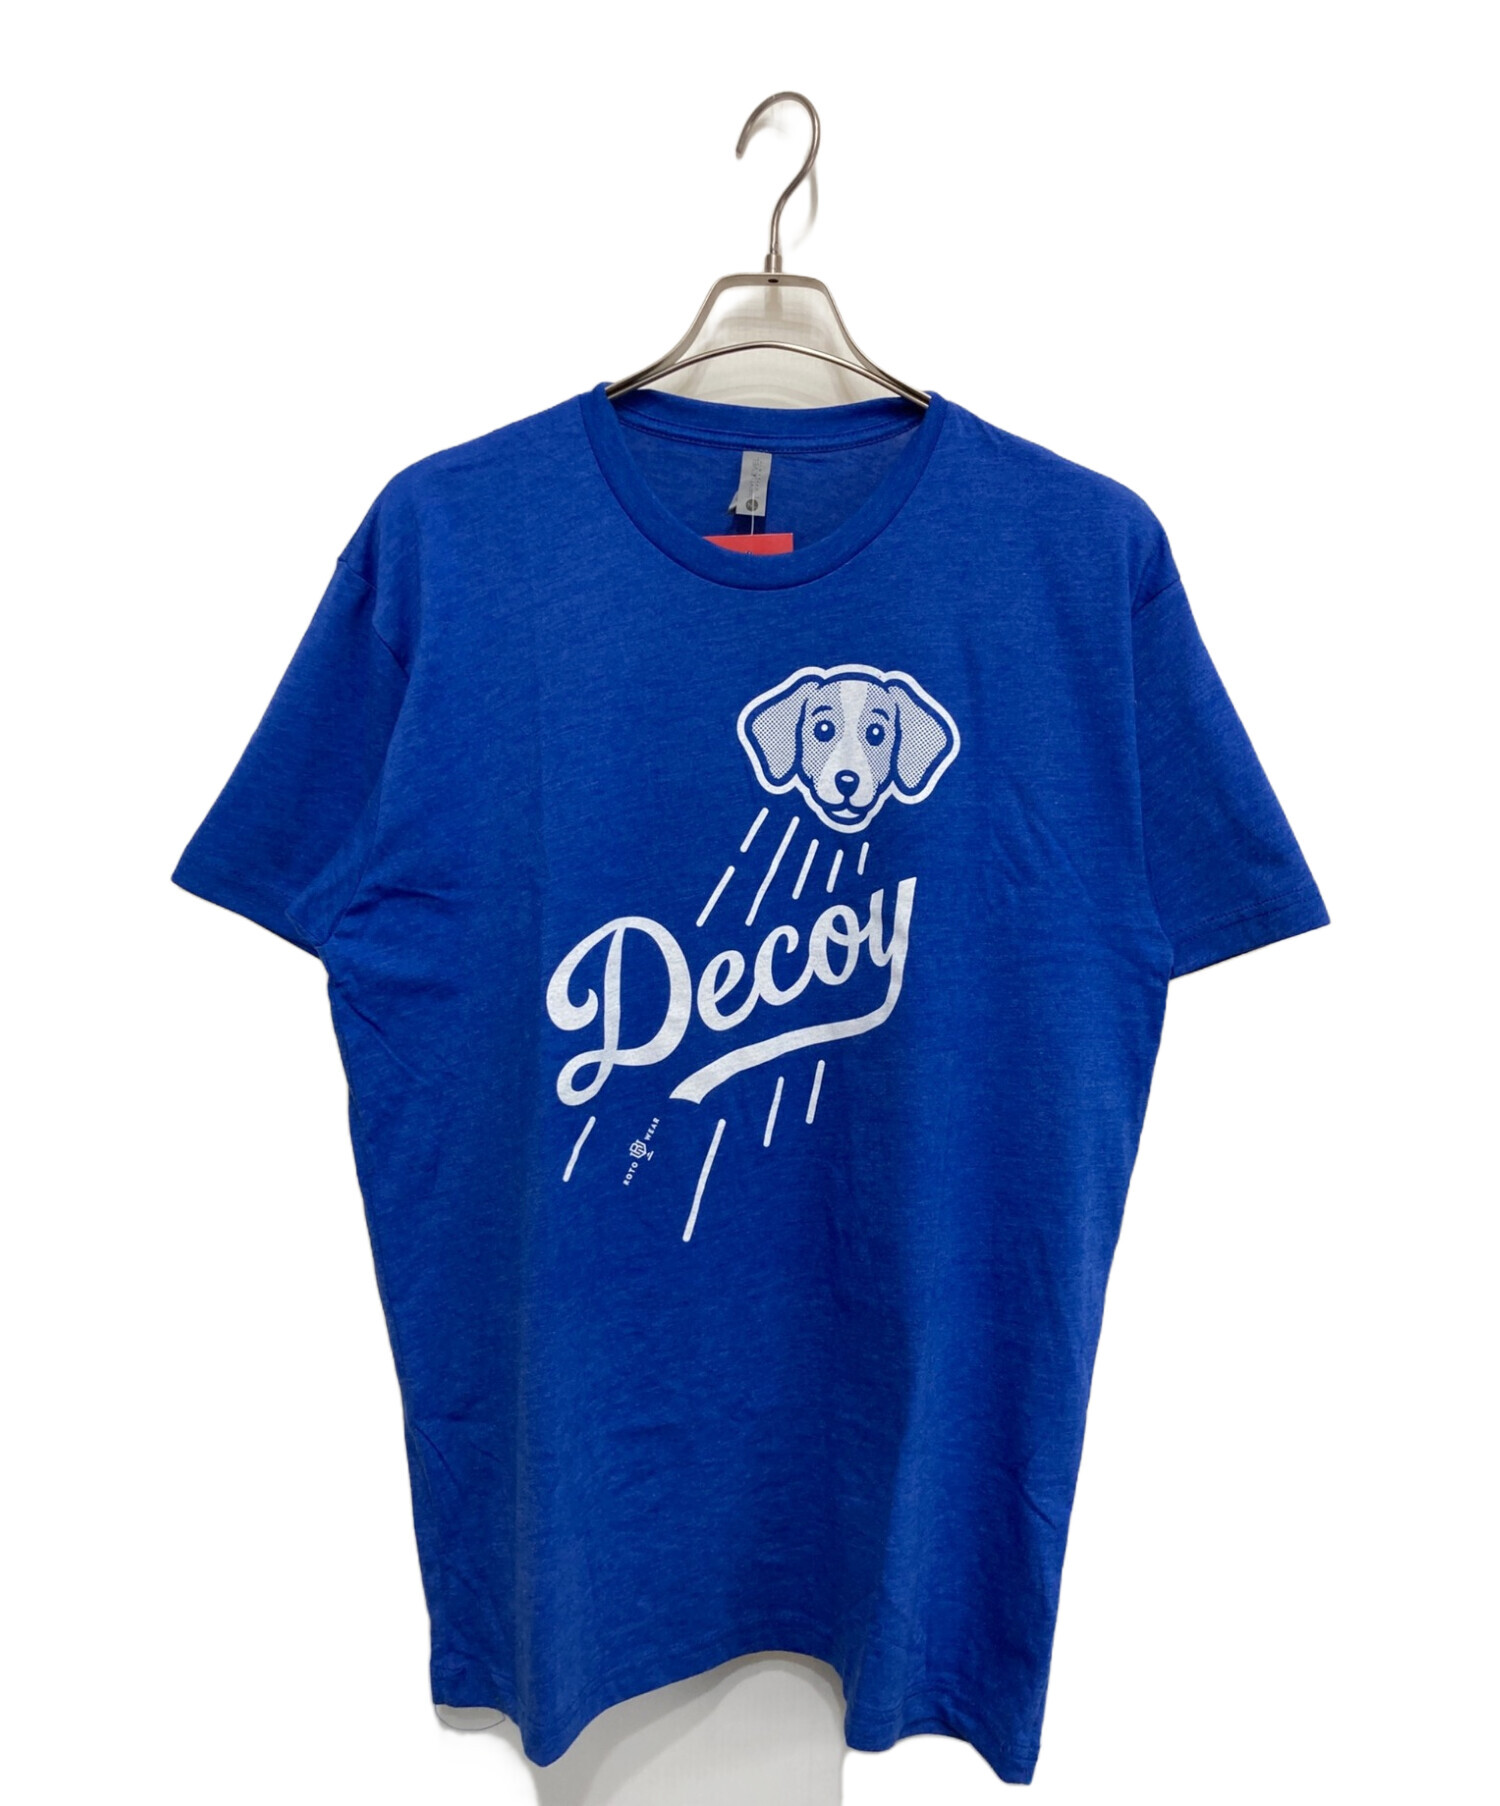 中古・古着通販】NEXT LEVEL (ネクストレーベル) Decoy Tシャツ ブルー ...